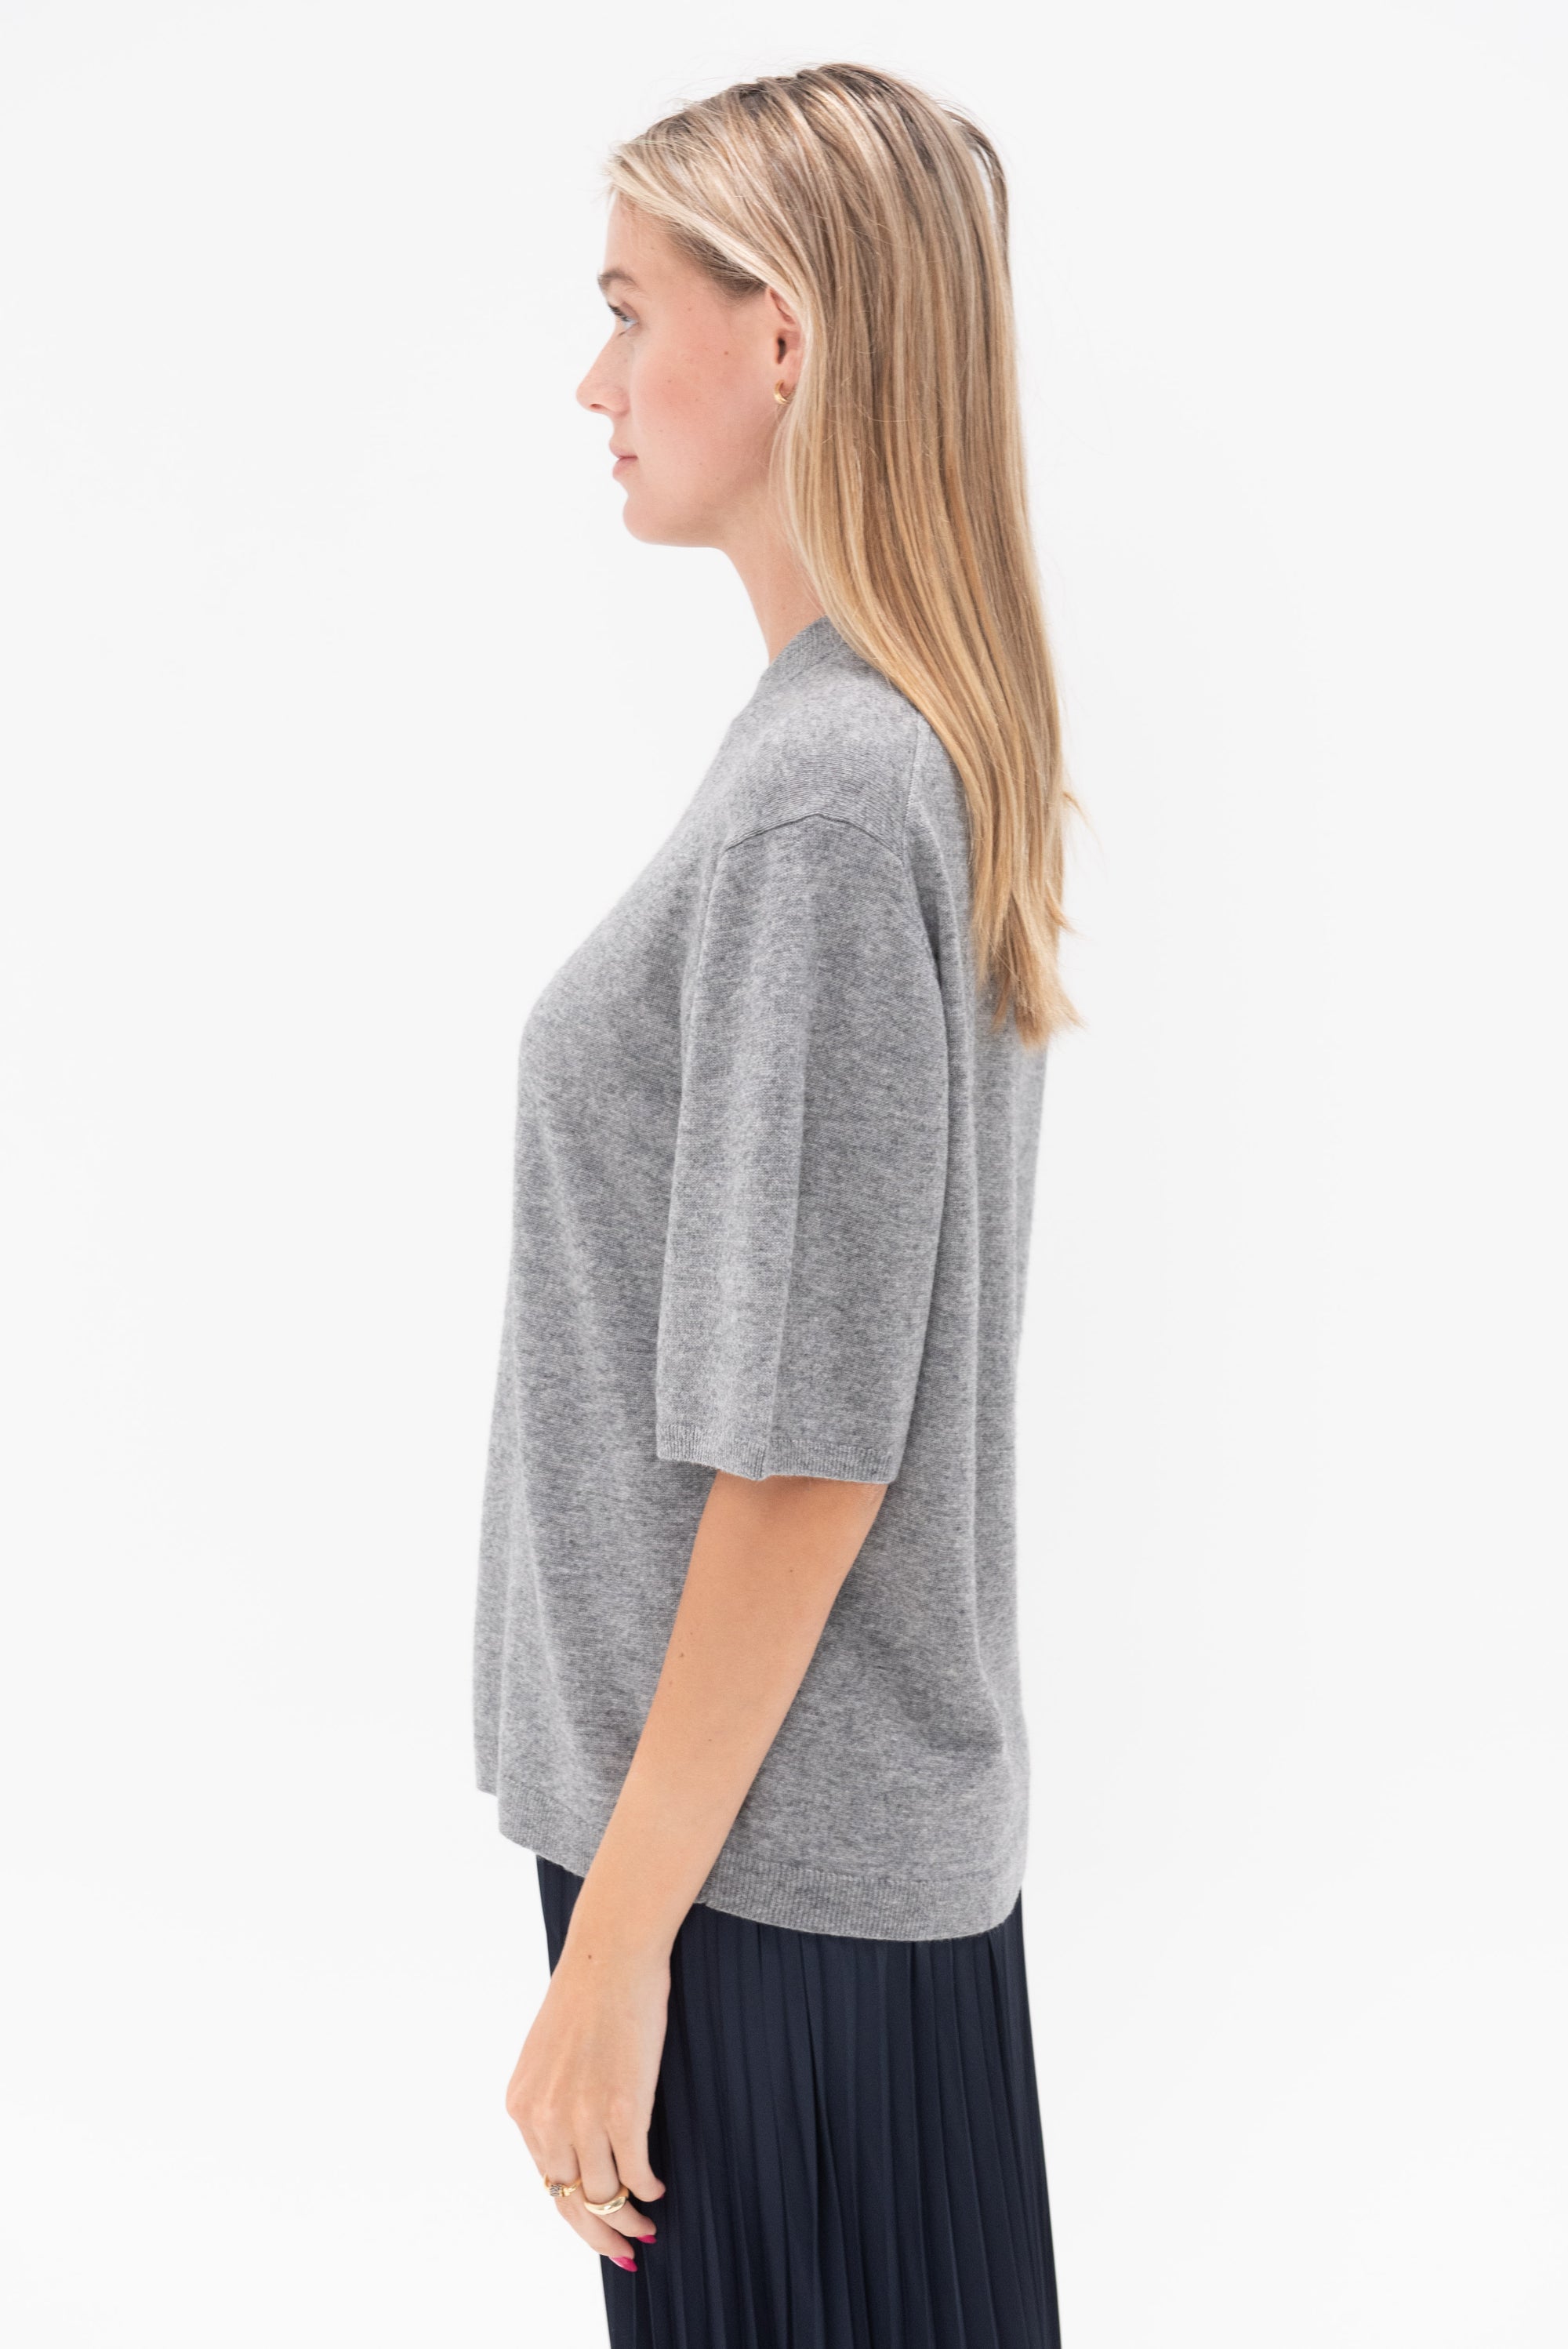 TIBI - Washable Cashmere Oversized Easy T-Shirt, Heather Grey